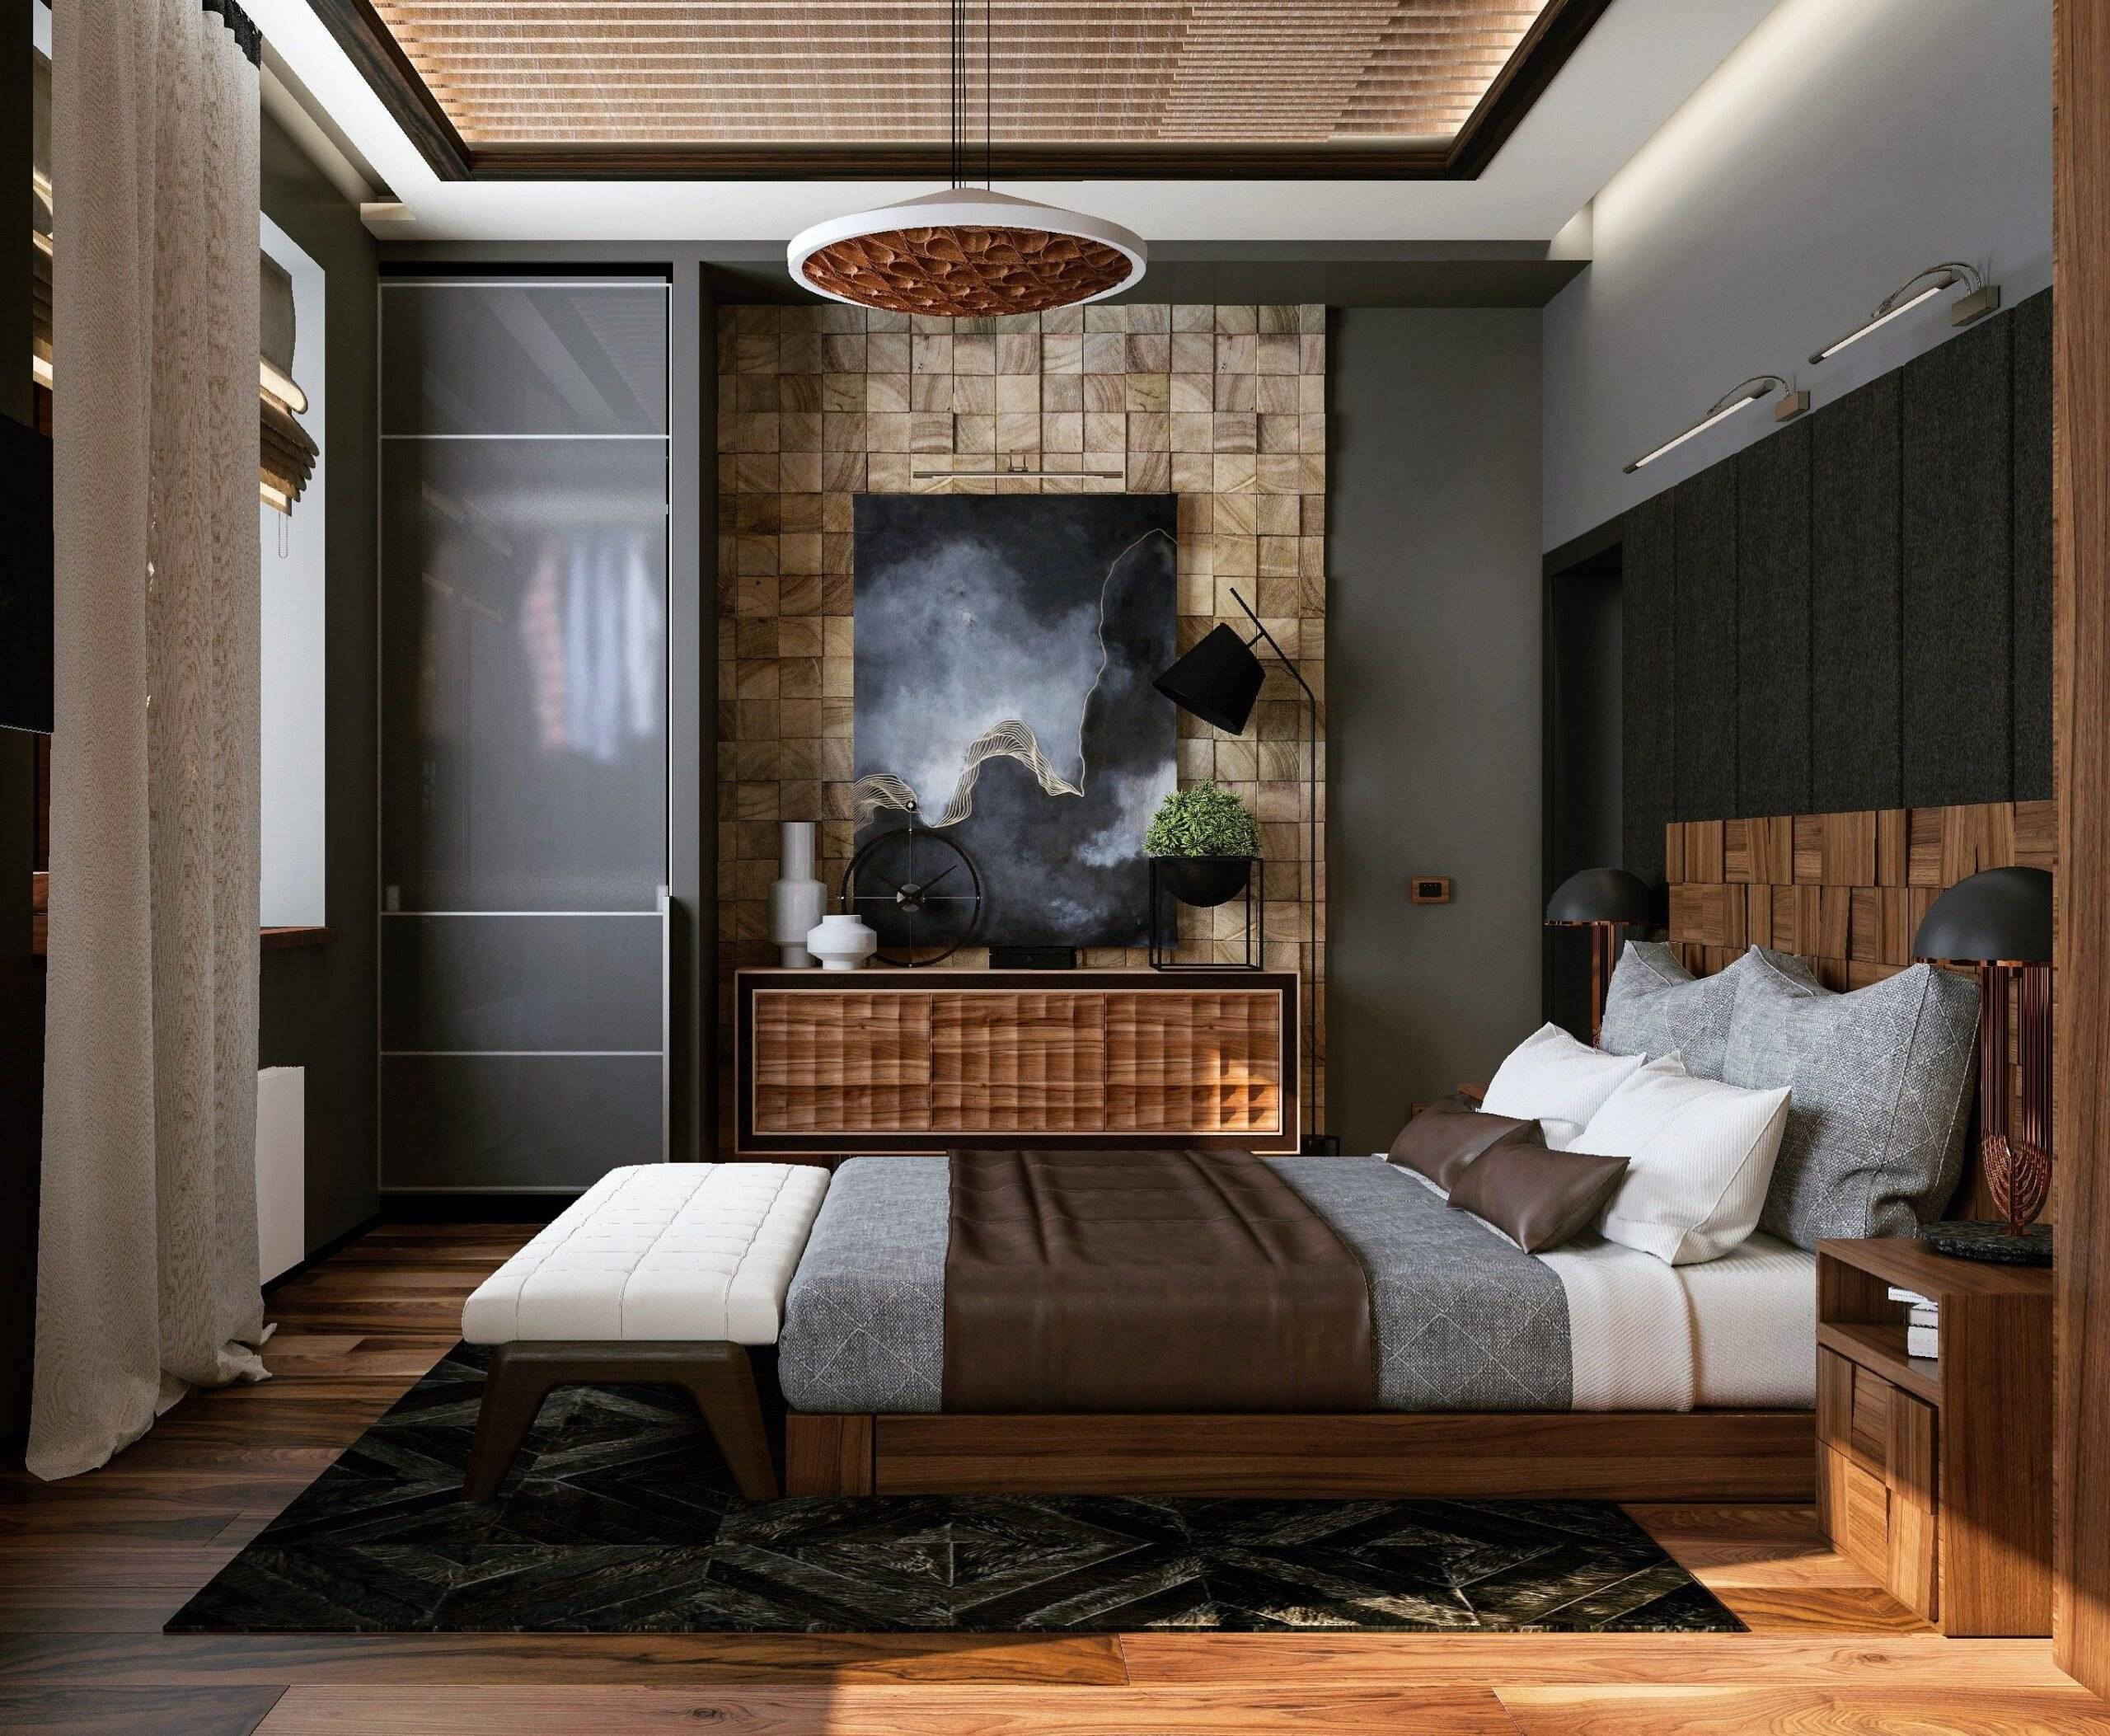 Особенности дизайна небольшой гостиной 12 кв. м: лучшие варианты интерьера